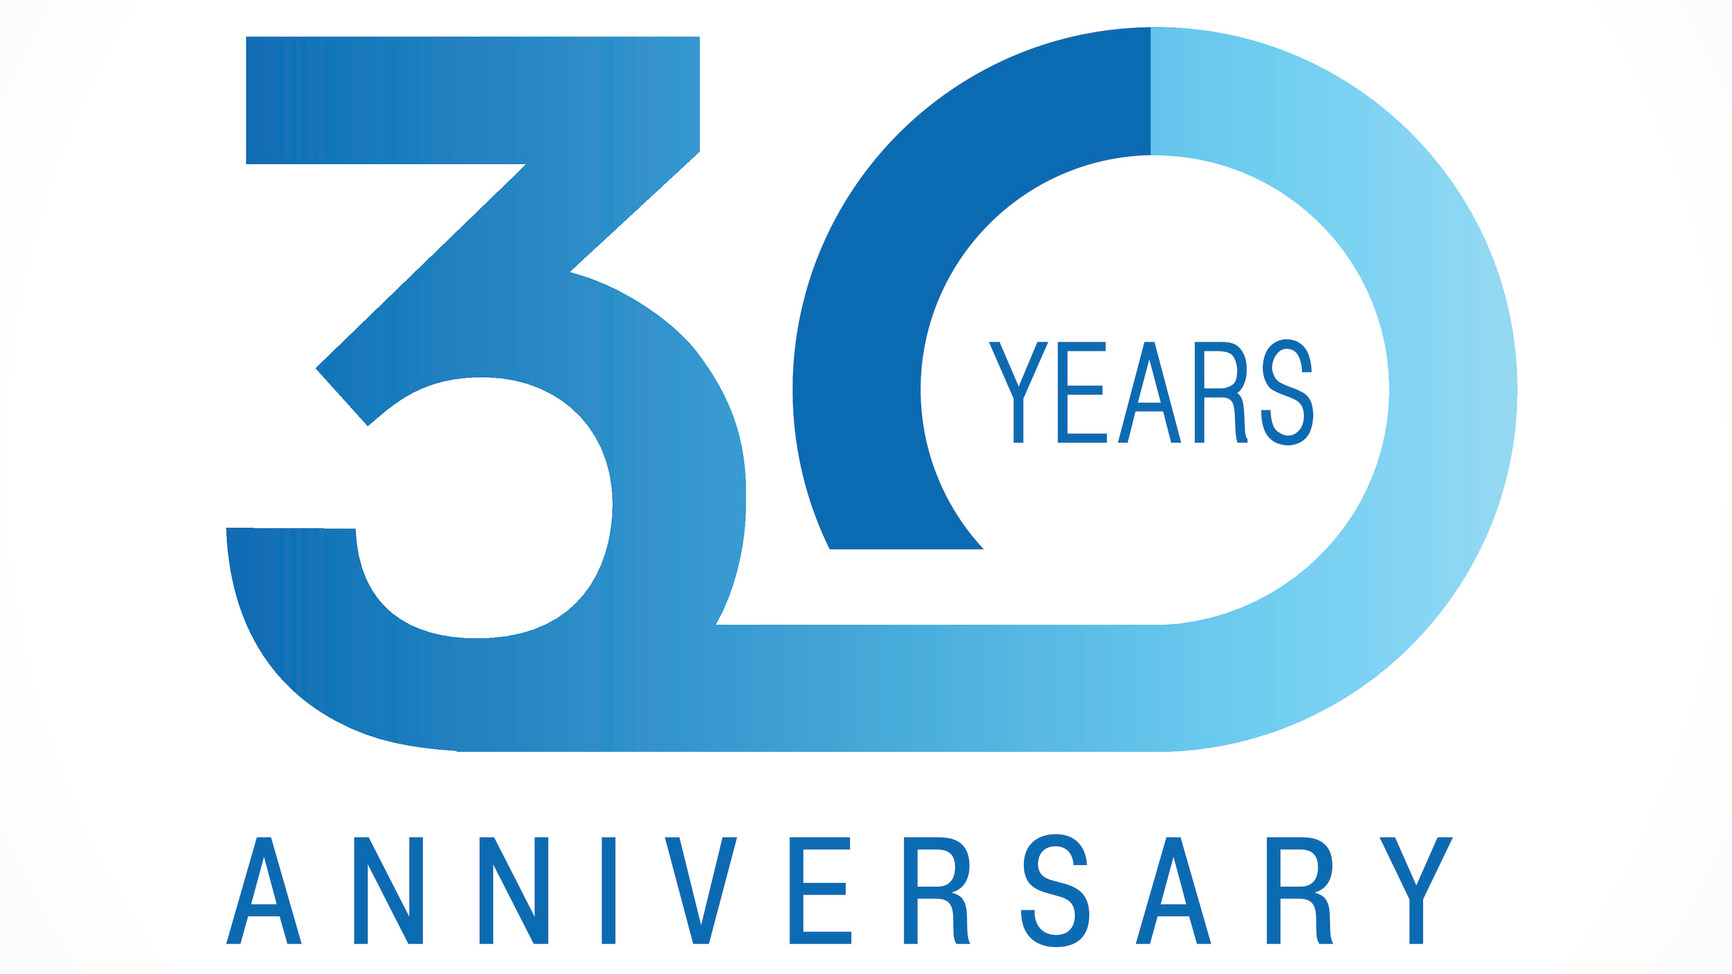 30 year anniversary logo